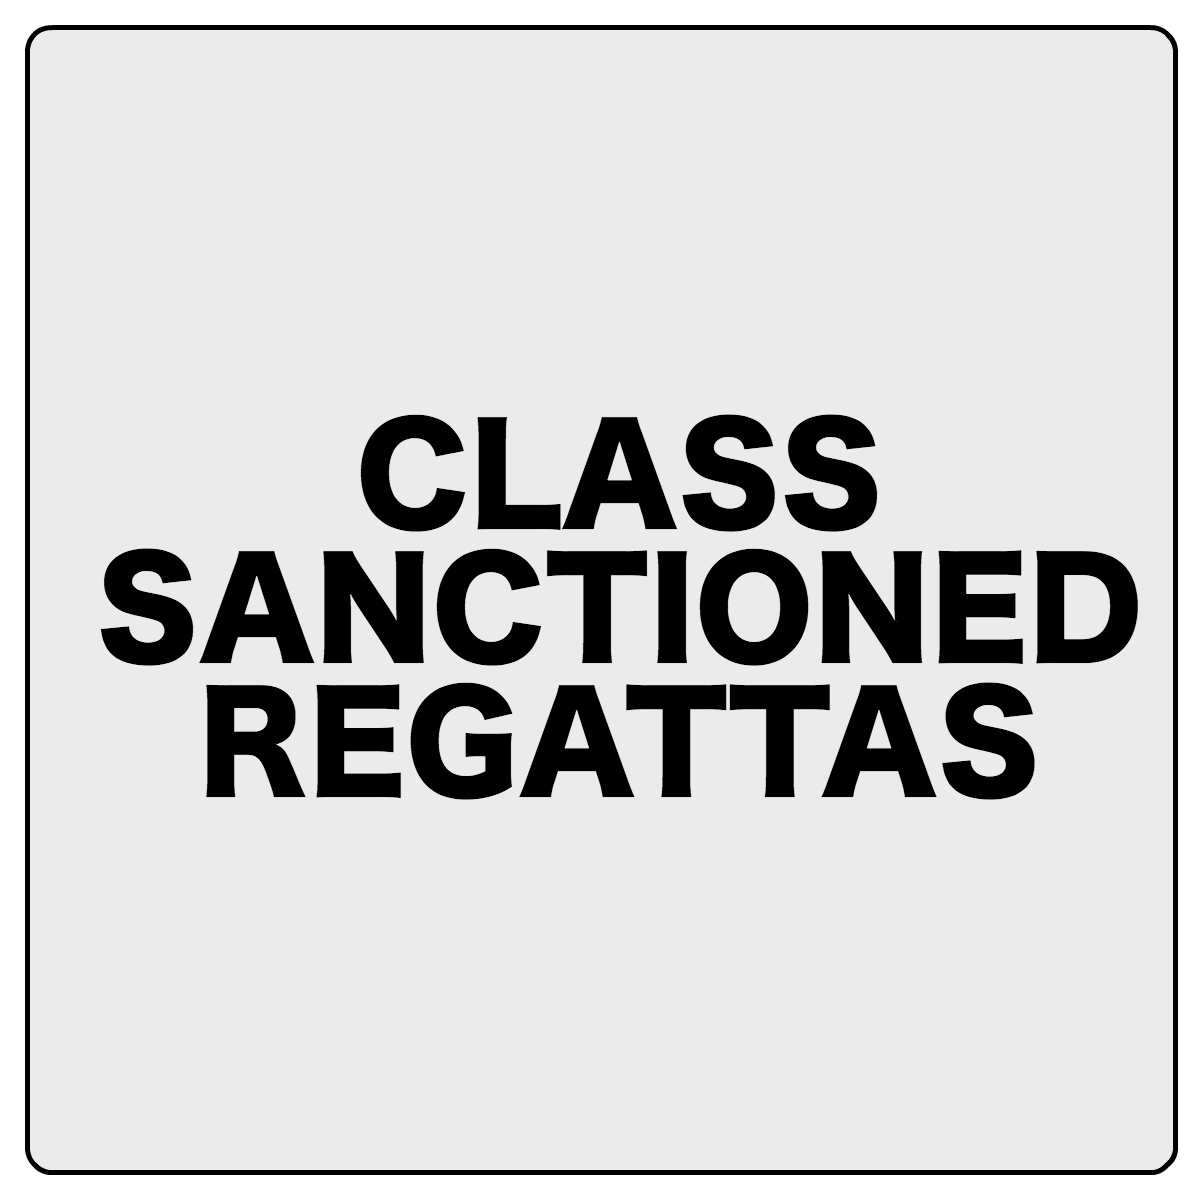 Sanctioned Regattas Default.png